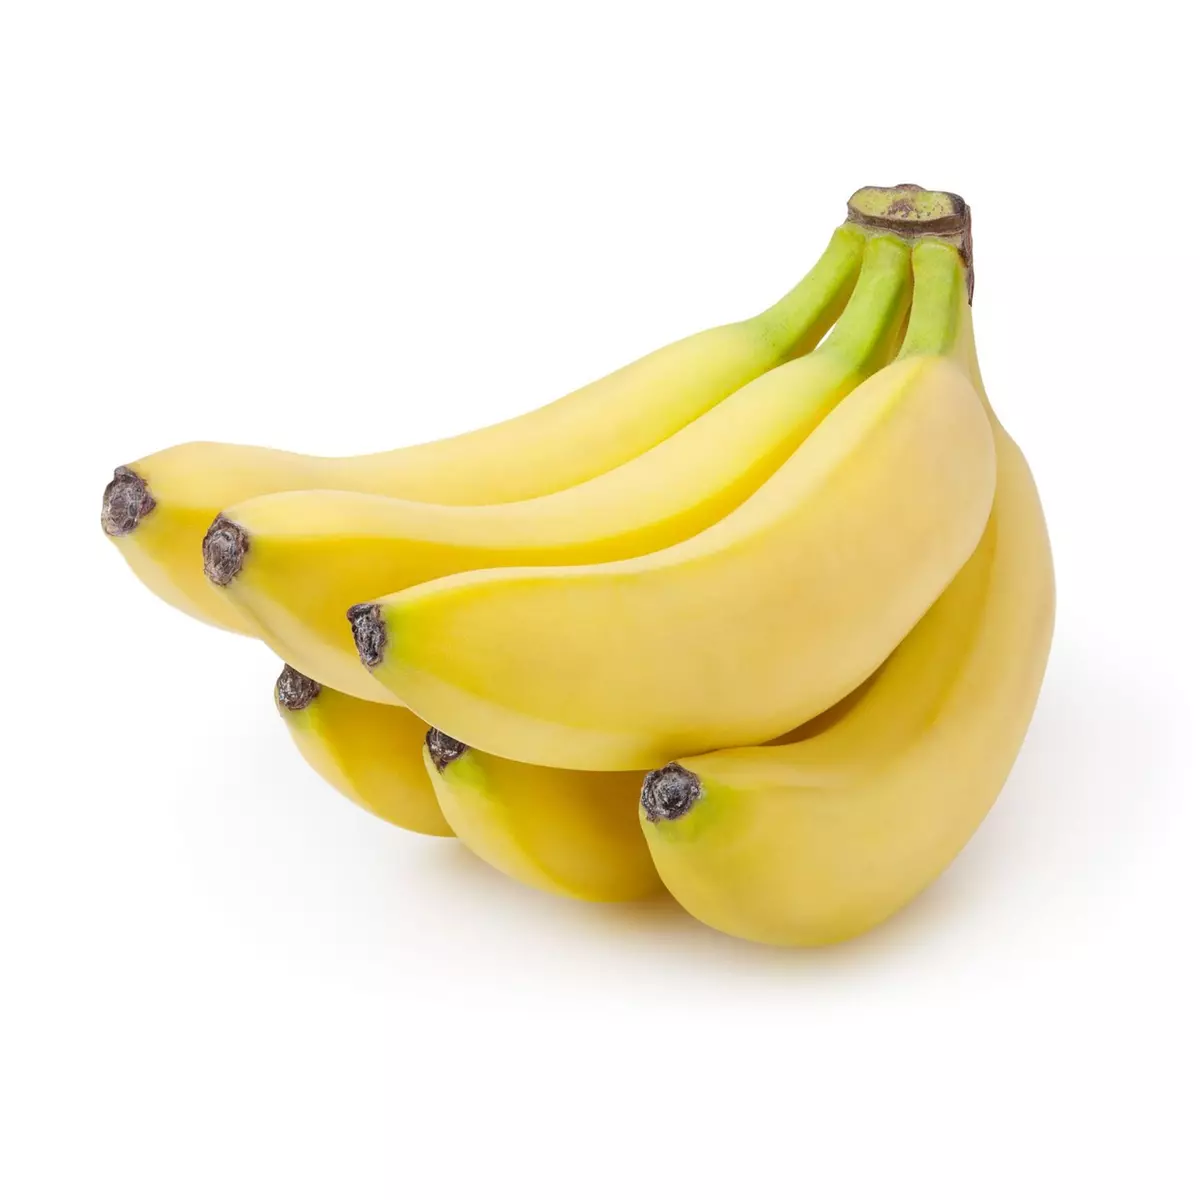 Bananes 1er prix 6 pièces